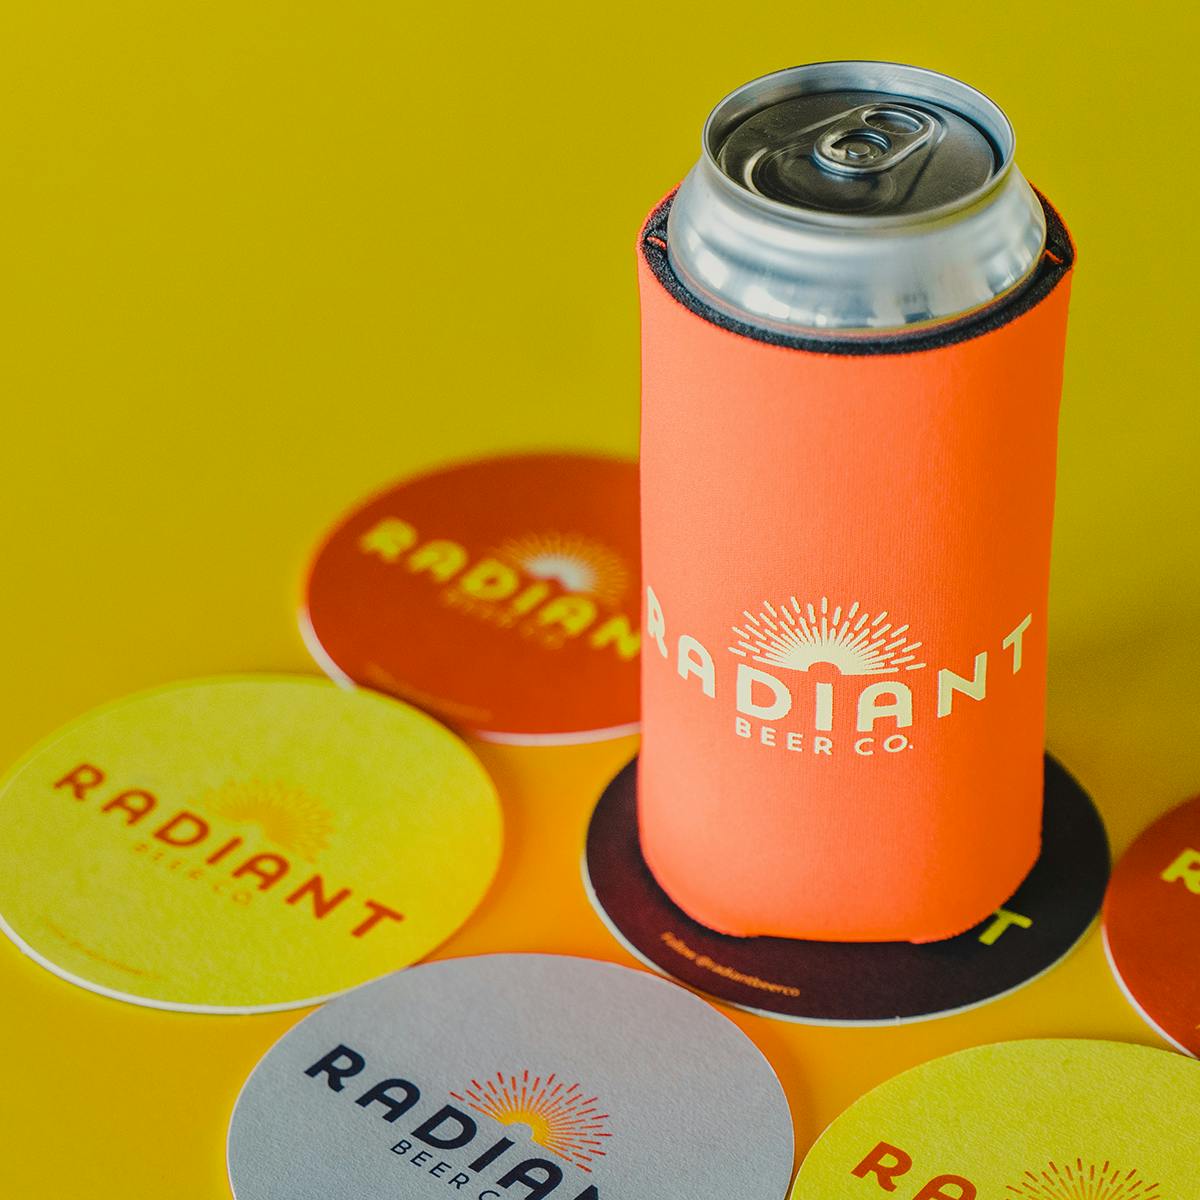 Radiant Can Cozy - Logo  Radiant Beer Online Shop